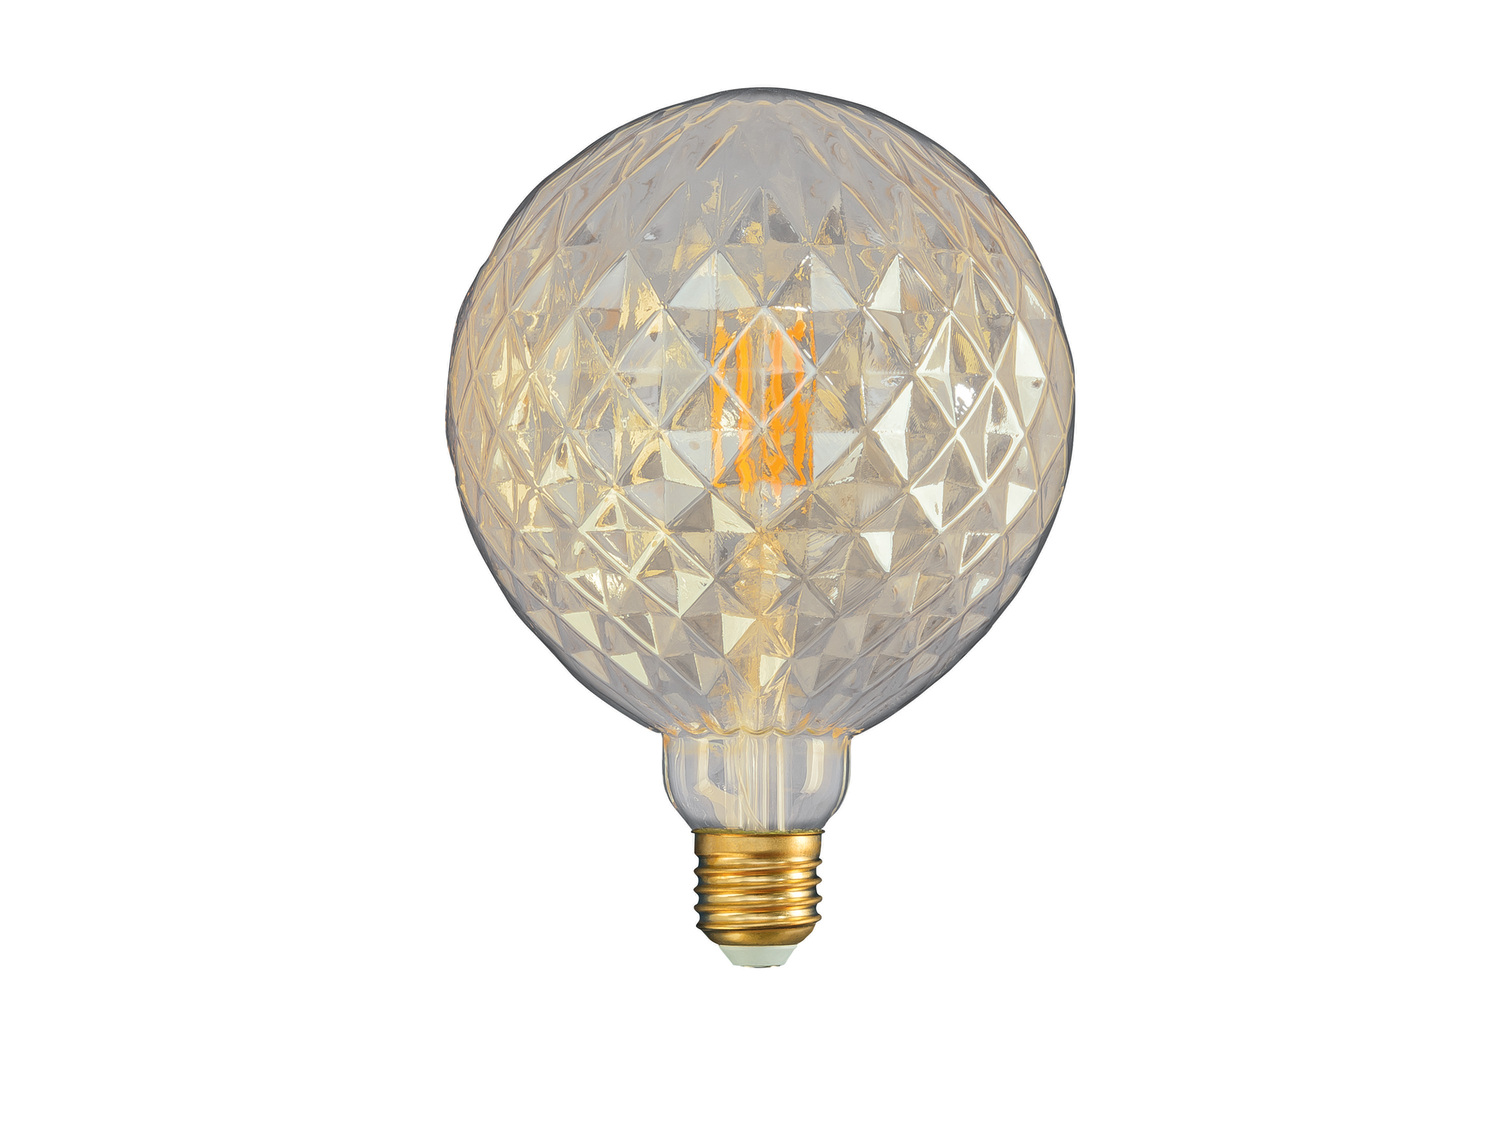 Ampoule LED à filament , le prix 4.99 € 
- E27
- 4,9 W, 490 lm
ou
- E27
- ...